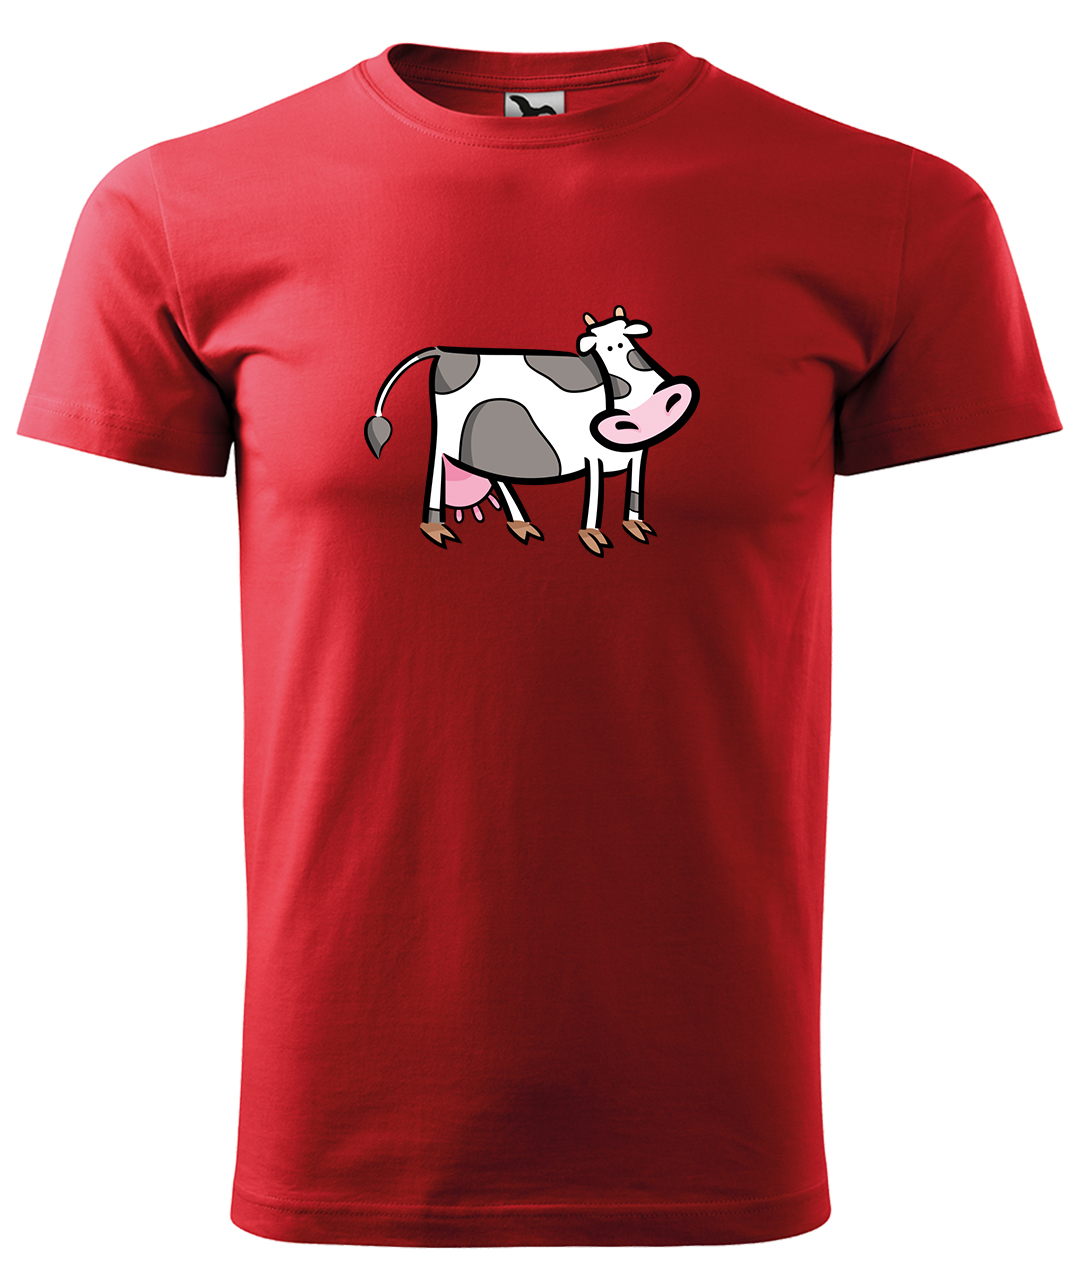 Dětské tričko s krávou - Kravička Velikost: 4 roky / 110 cm, Barva: Červená (07), Délka rukávu: Krátký rukáv